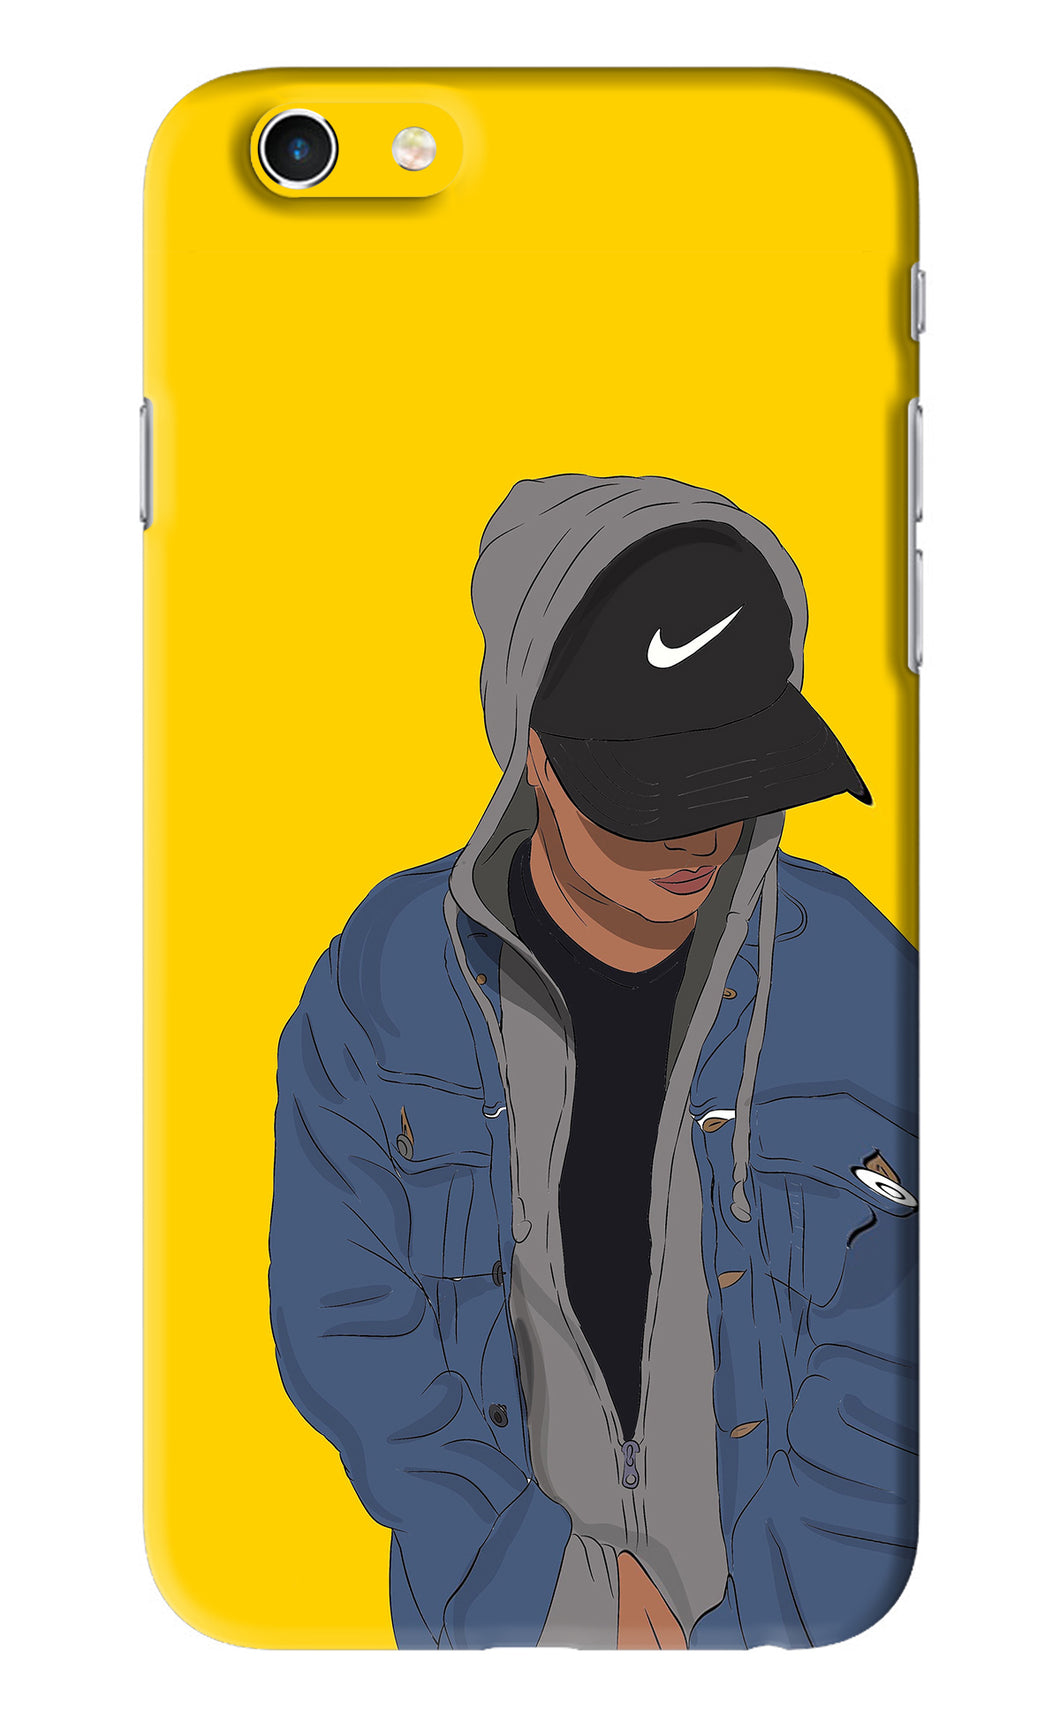 Nike Boy iPhone 6 Back Skin Wrap